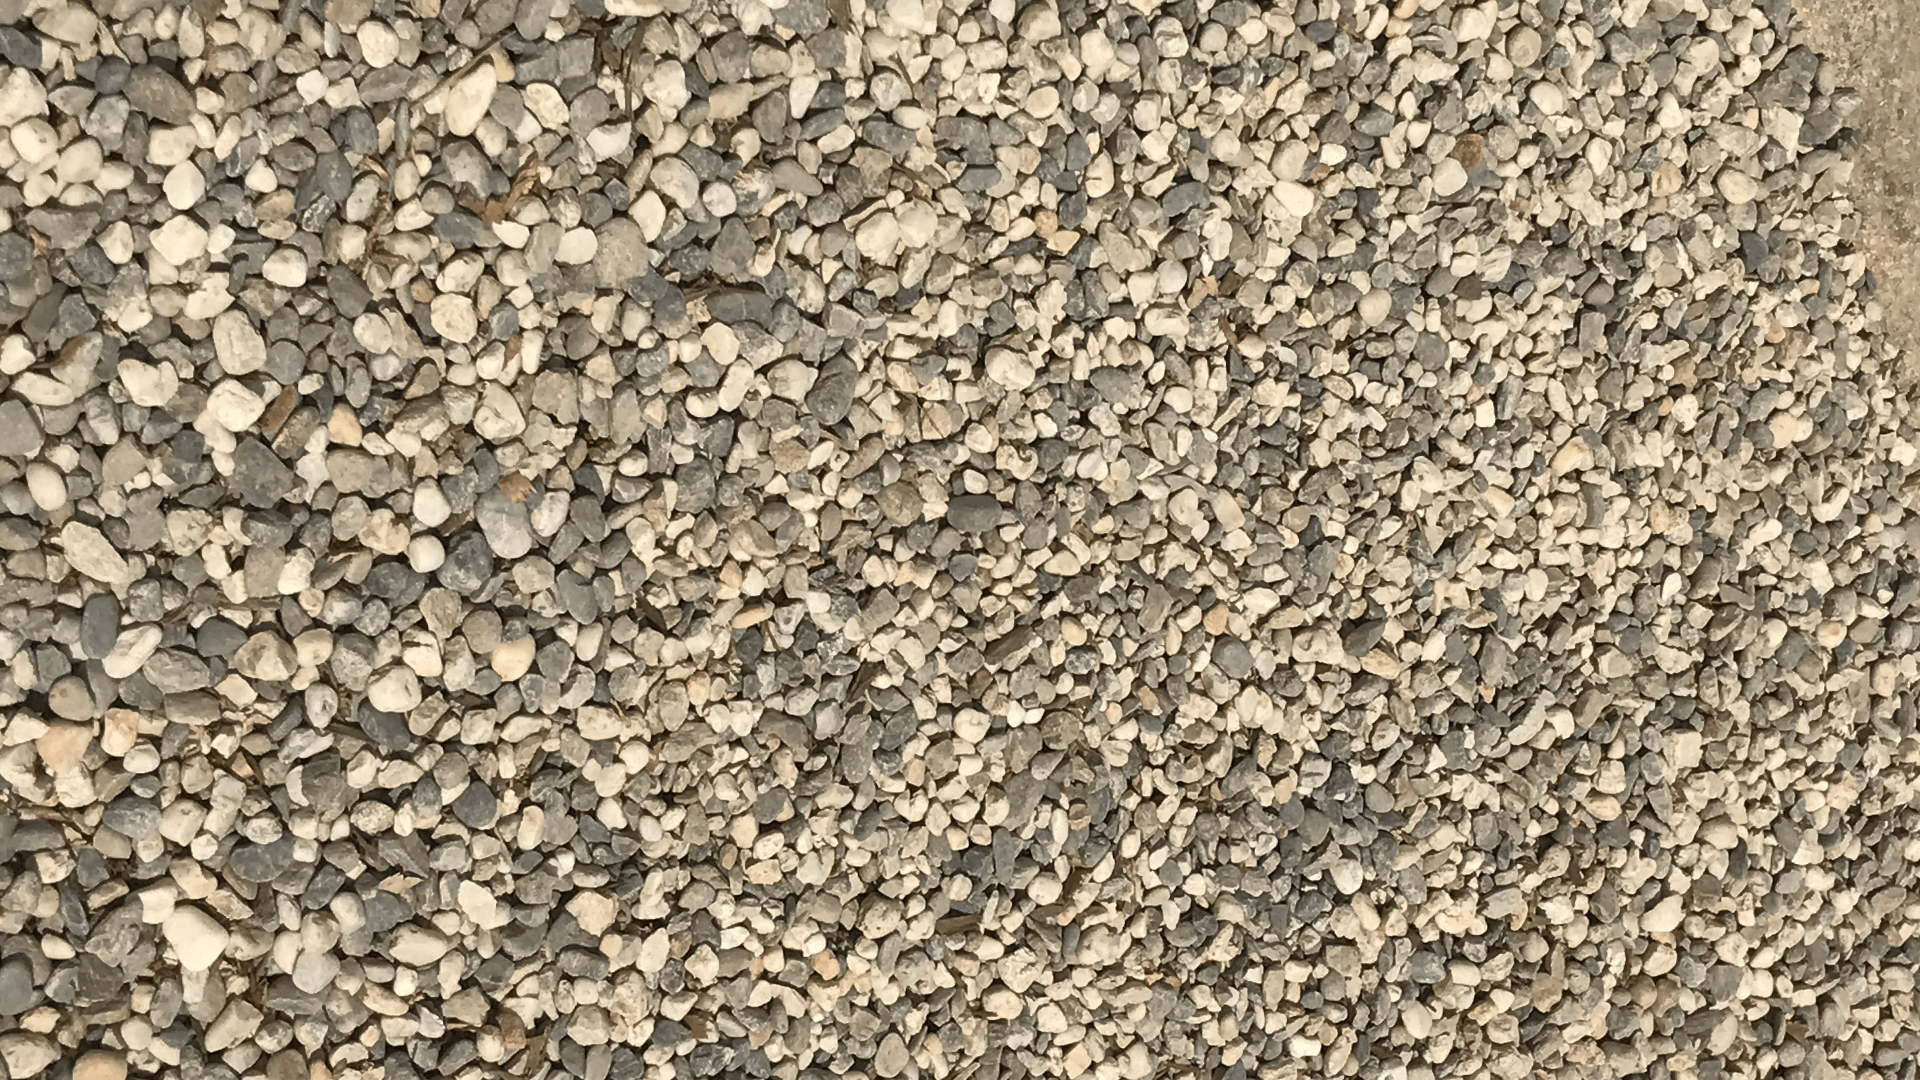 Yuba Dry - Cobbles & Boulders